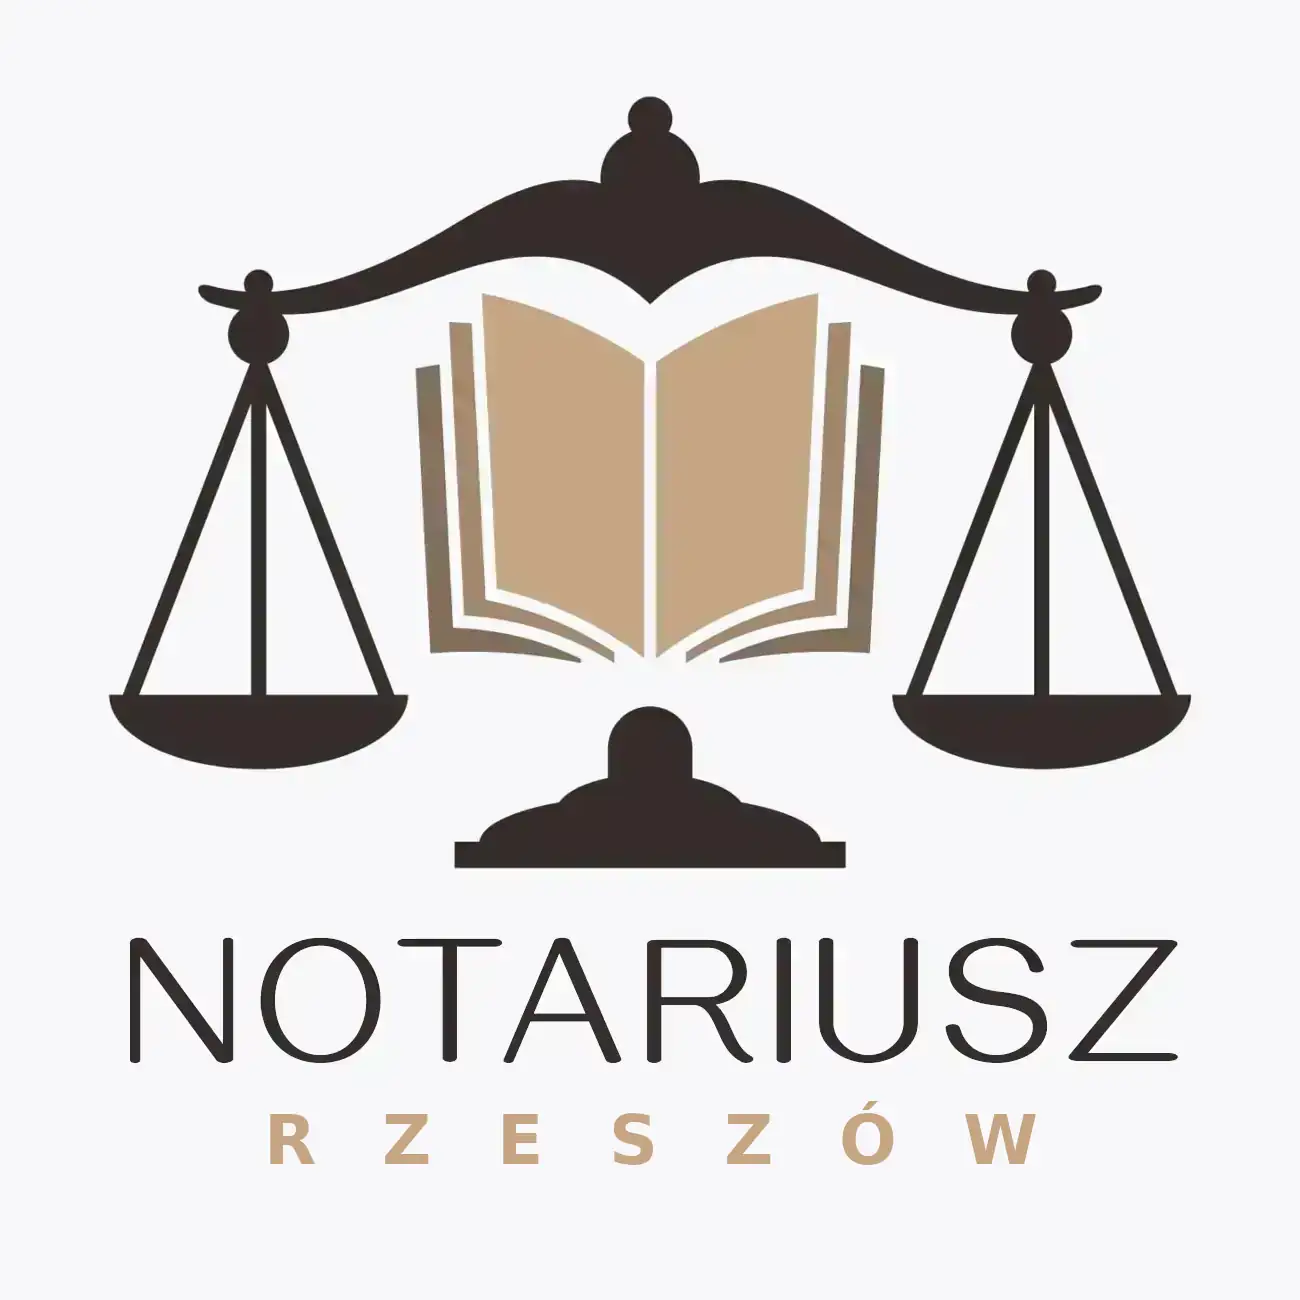 notariusz Rzeszów Podkarpackie - logo wagi prawniczej z księgą wieczystą